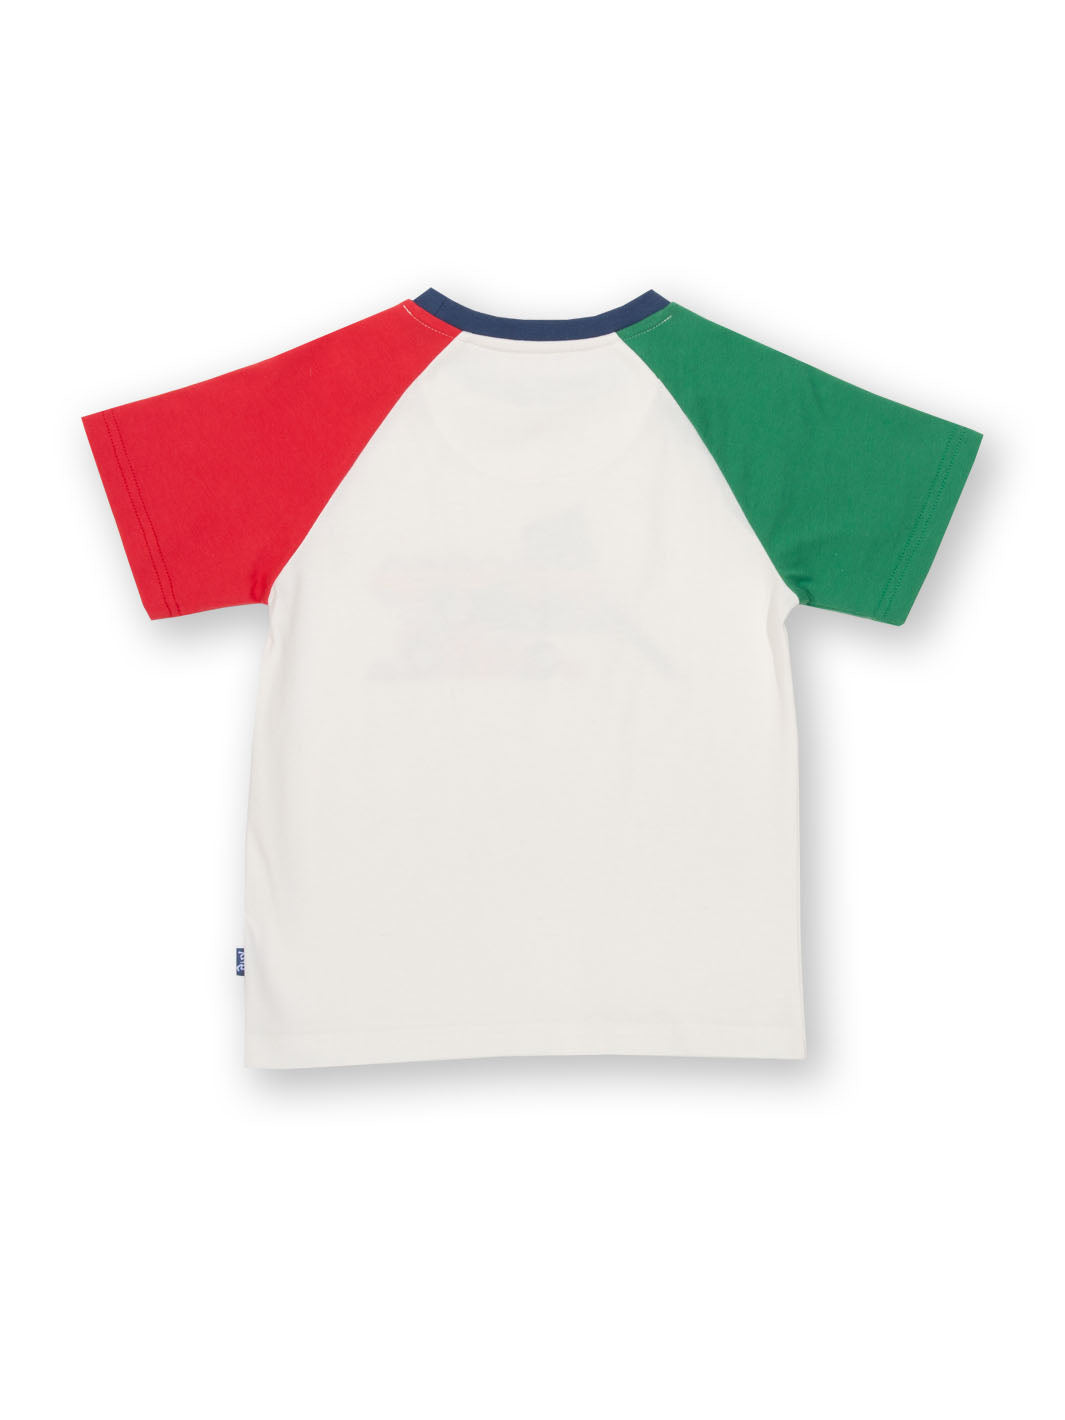 Kite Race Day T-Shirt - Cream